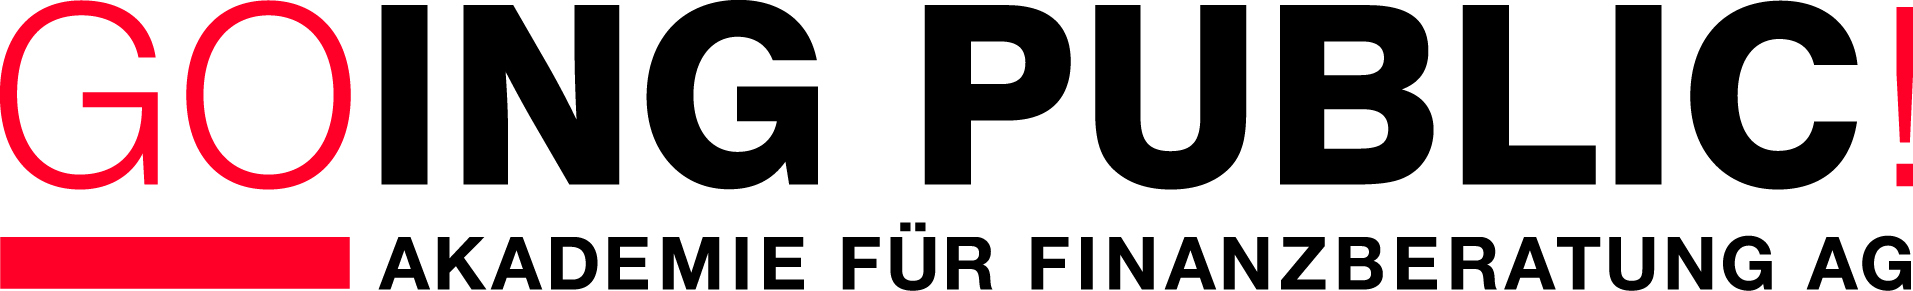 GP Akademie_Logo_rgb